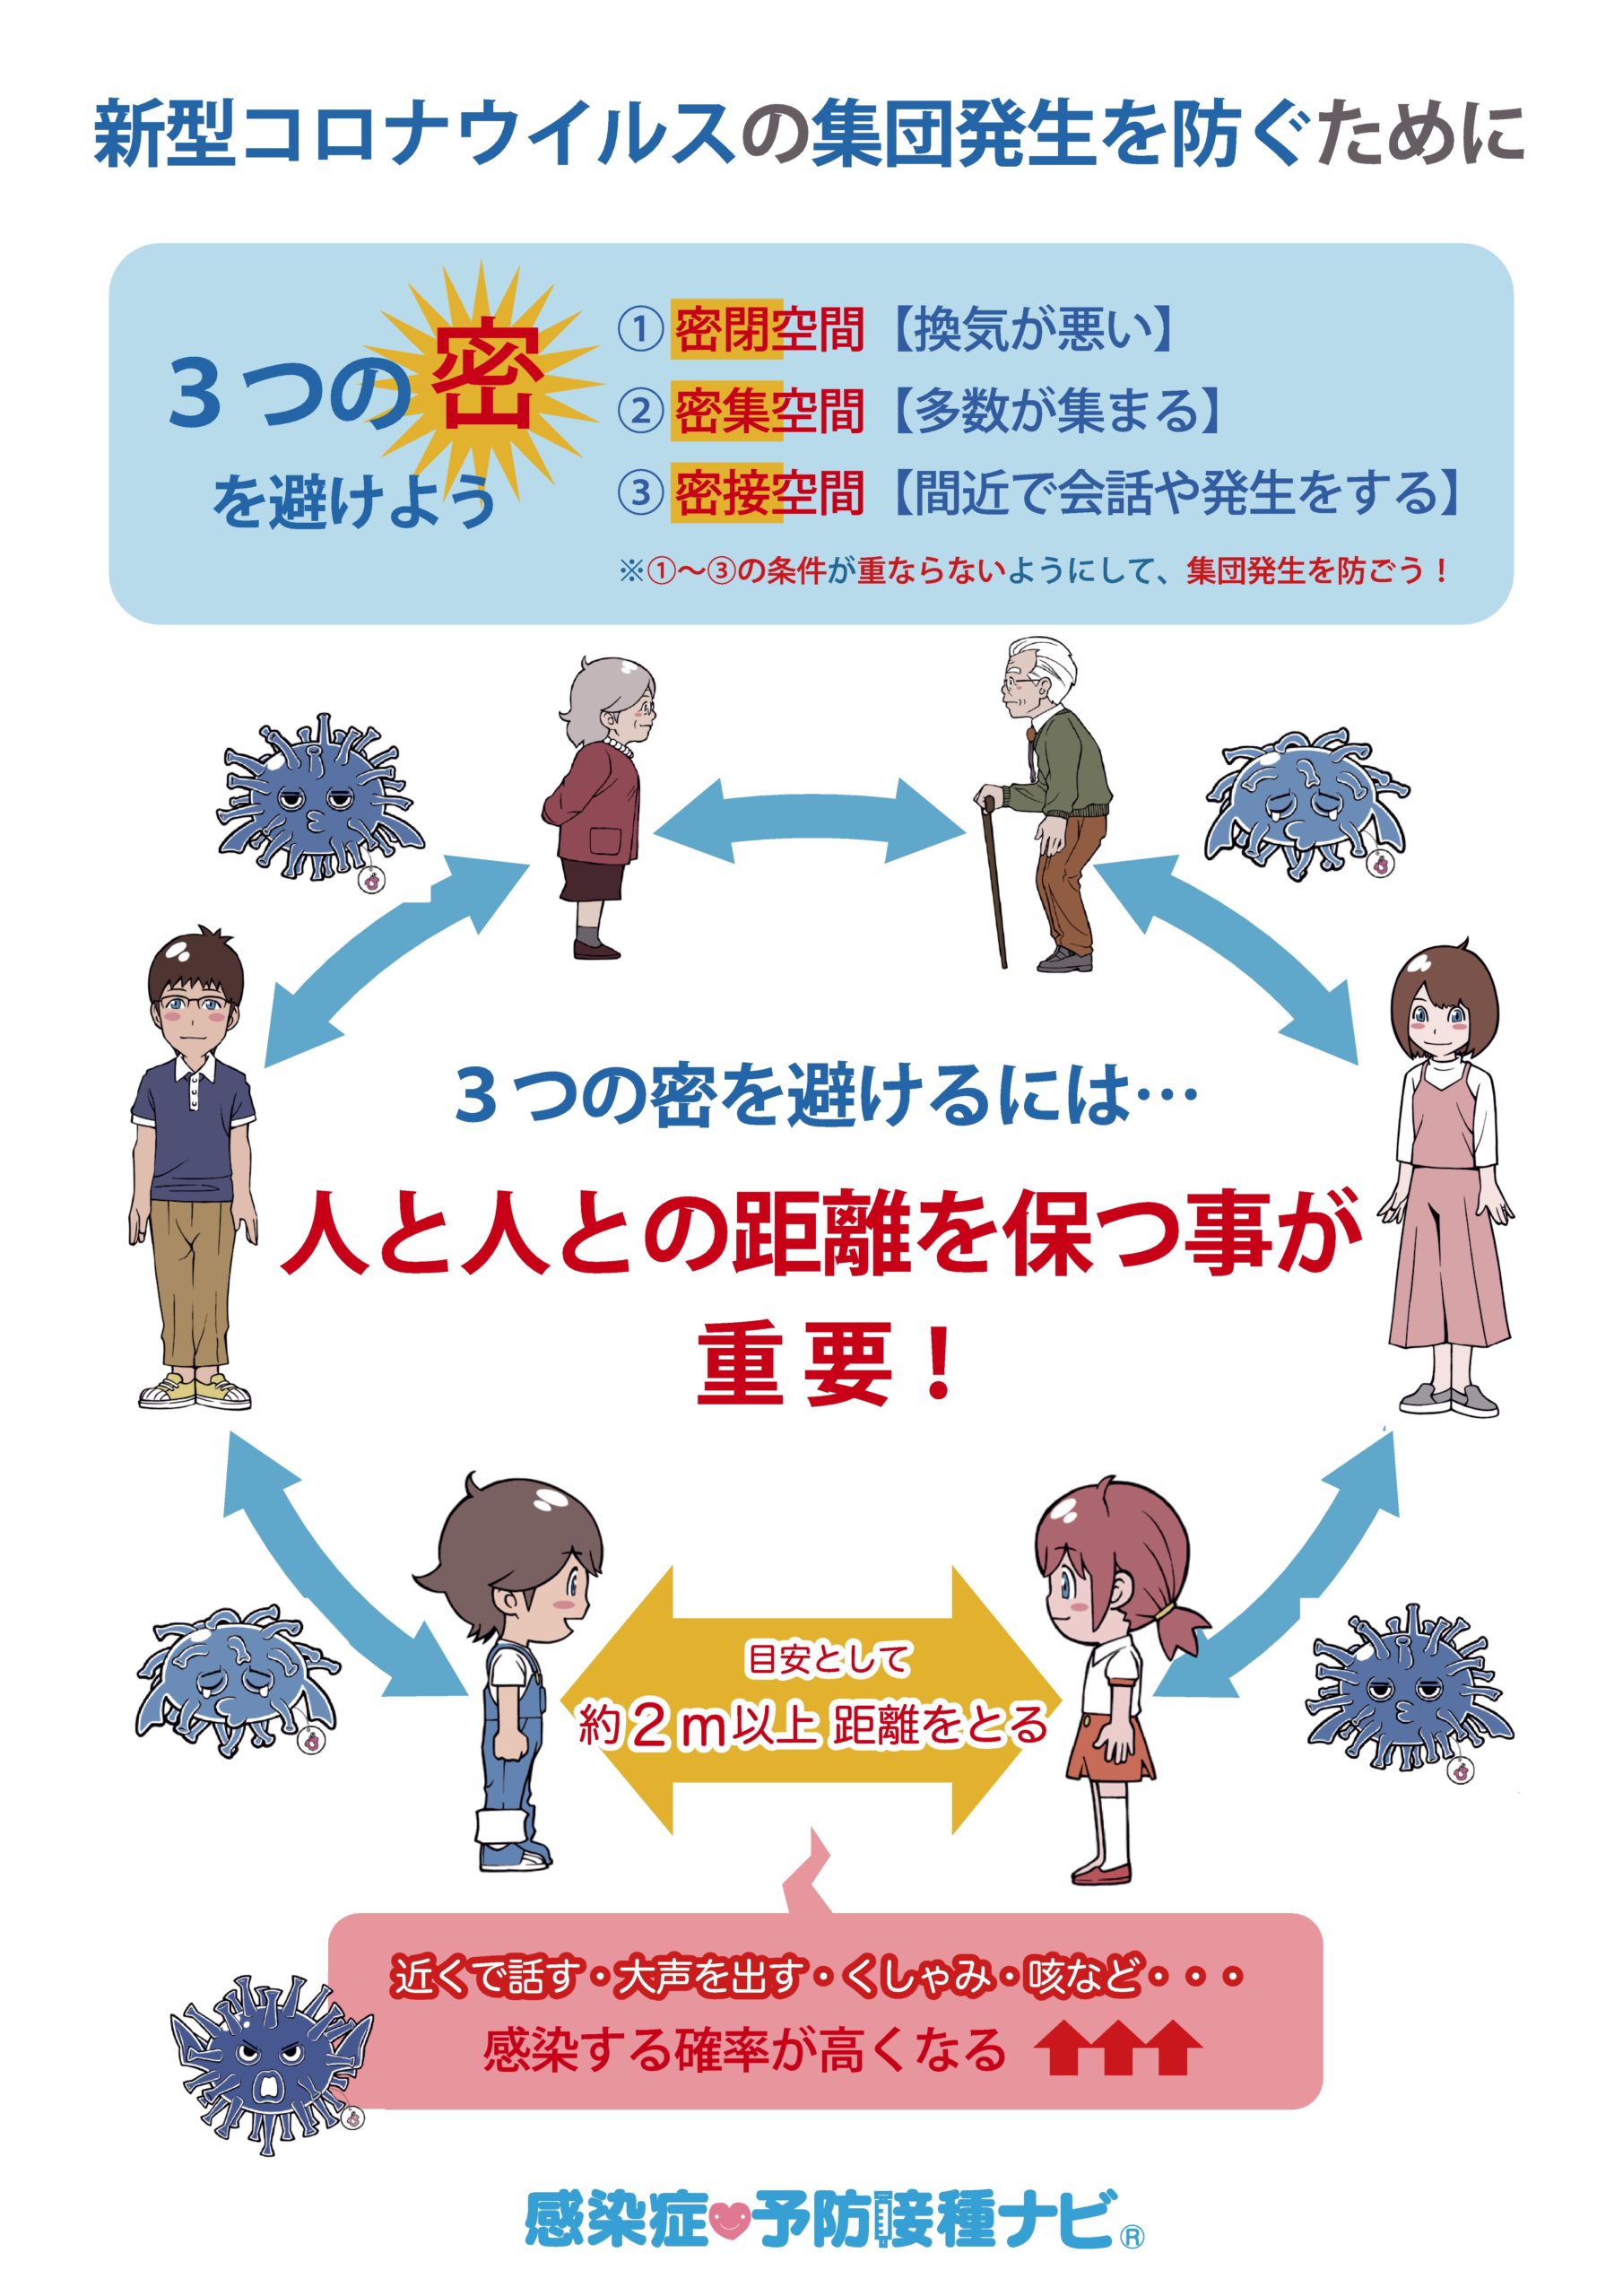 広島テレビ 新型コロナ予防啓発用イラストをwebで無償提供 電波新聞デジタル